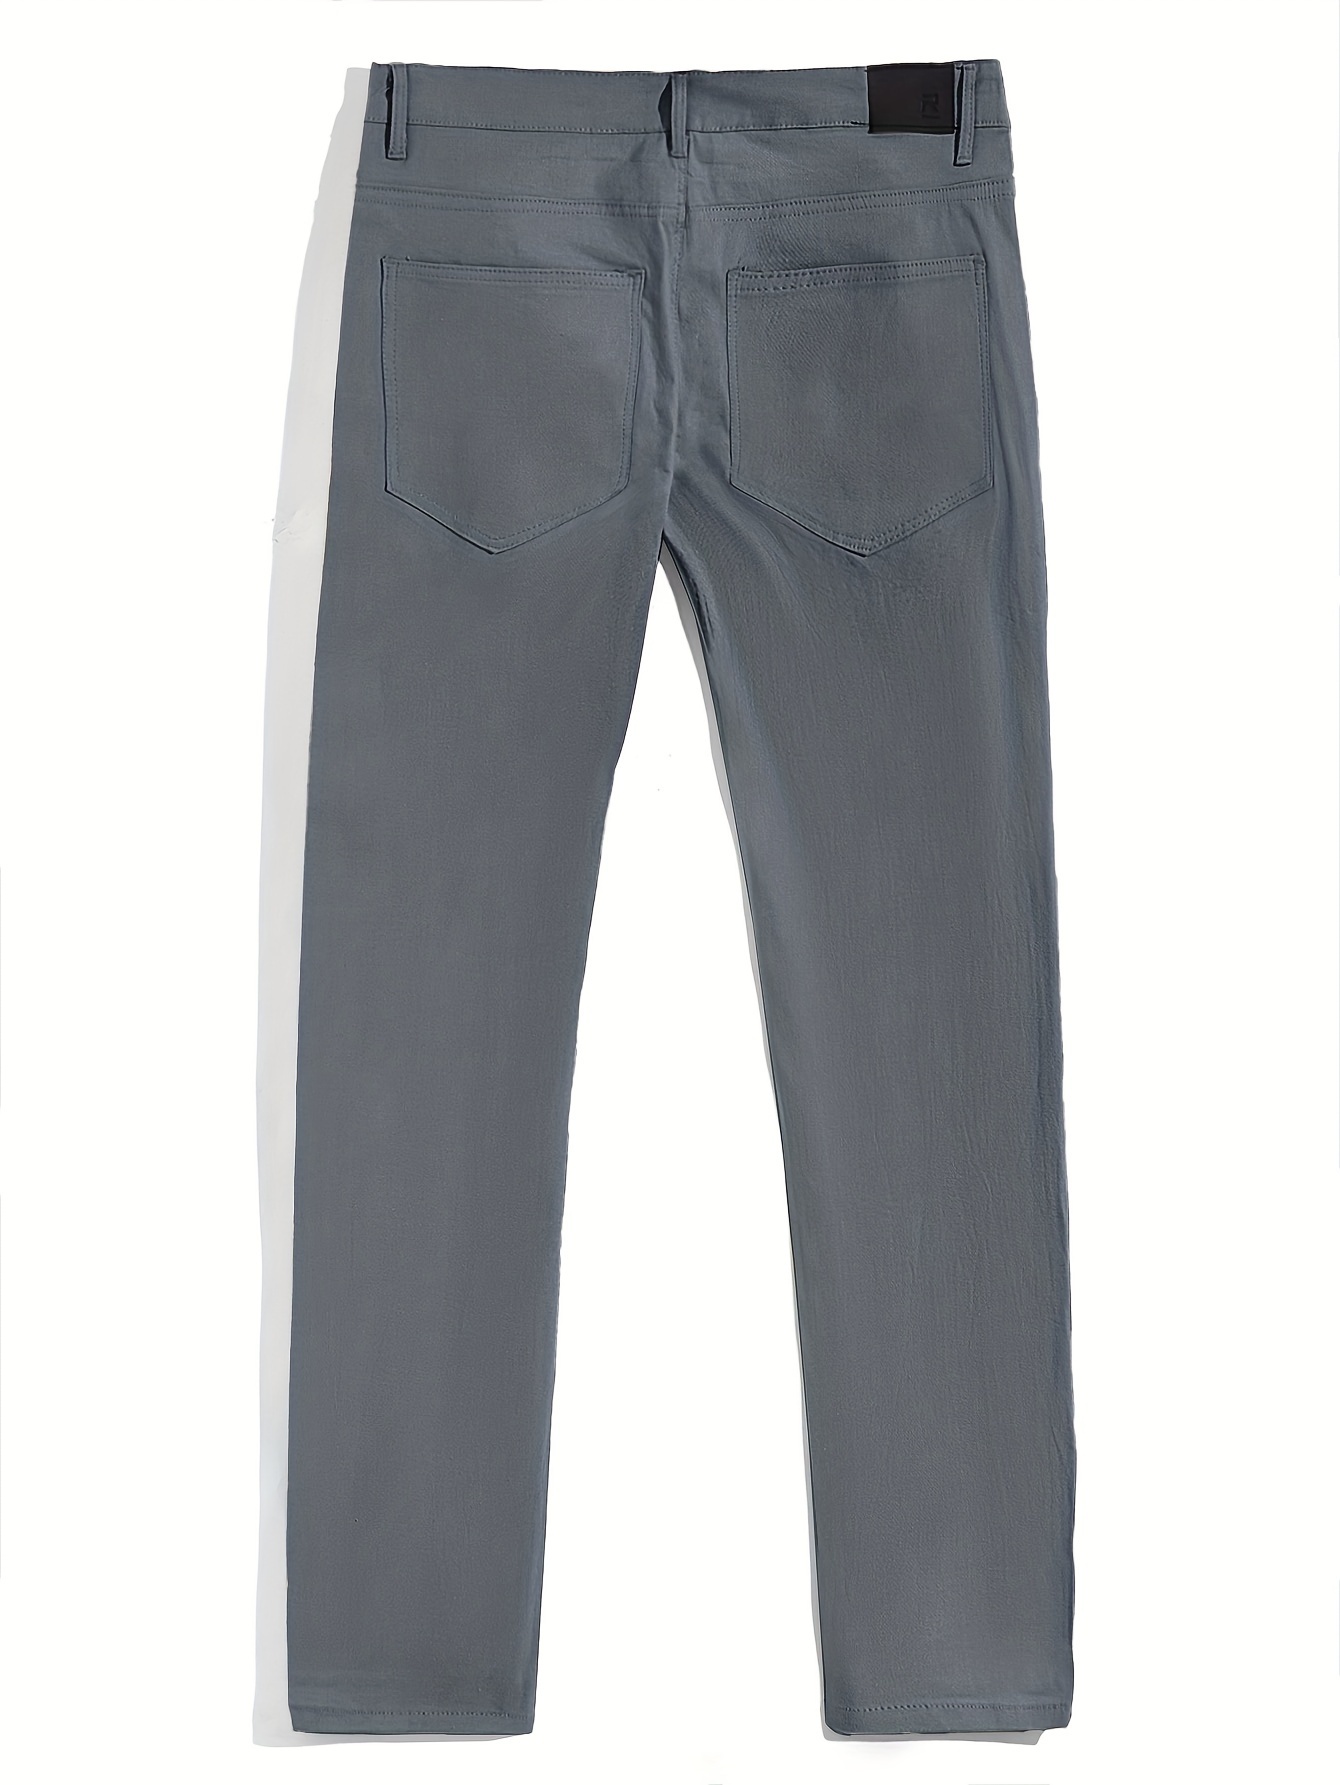 Classic Design Pantalon Habillé, Pantalon Habillé Solide Pour Homme  Légèrement Extensible Pour Les Affaires